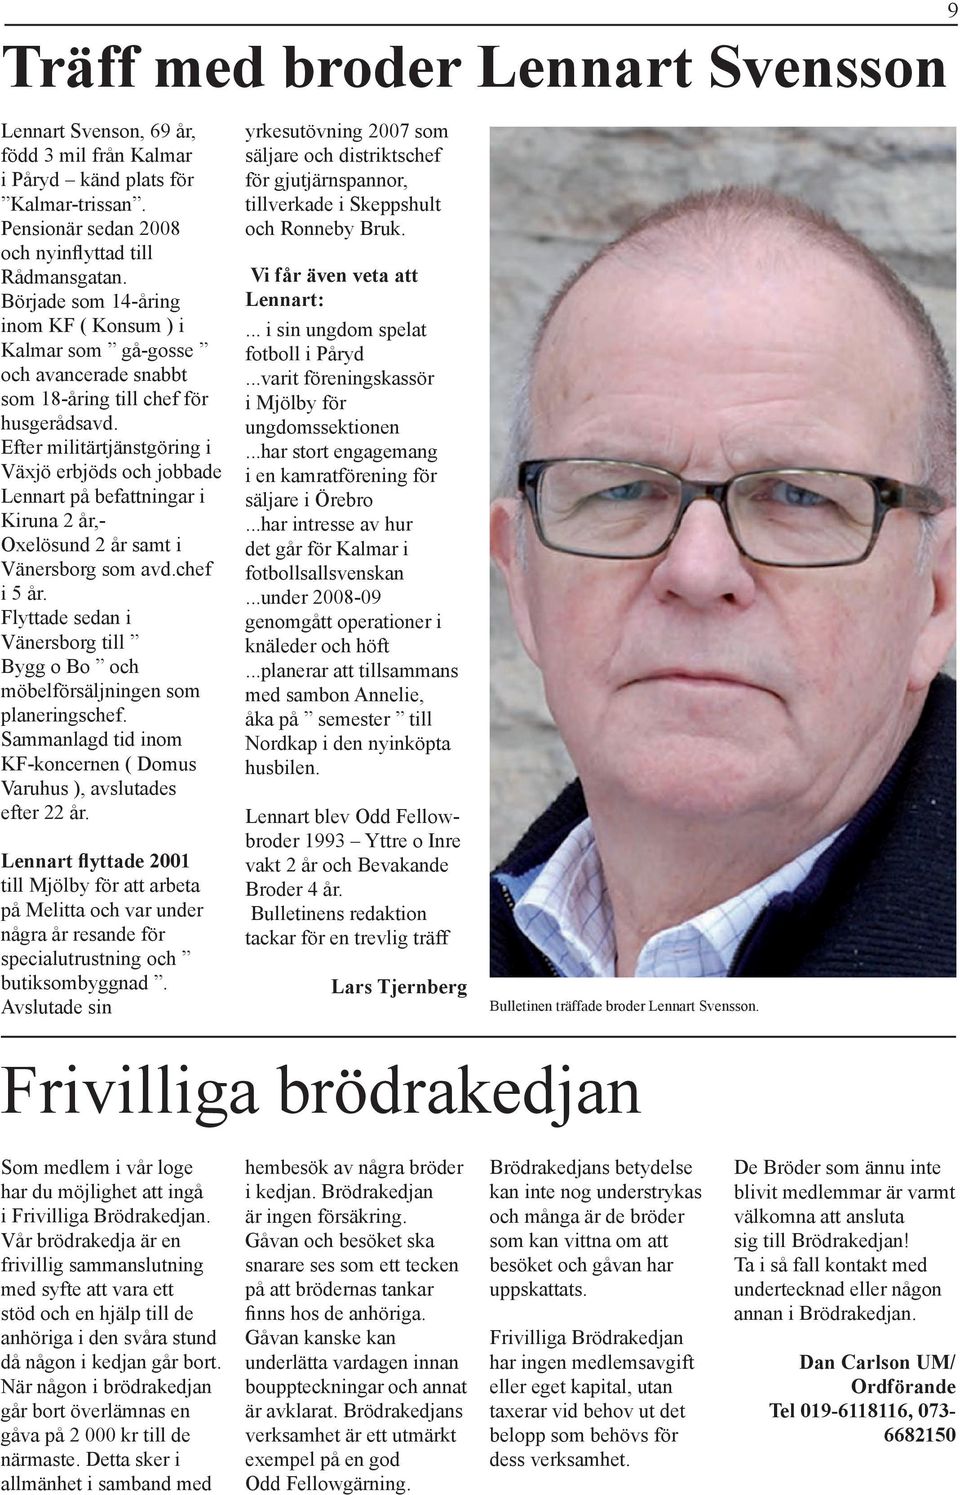 Efter militärtjänstgöring i Växjö erbjöds och jobbade Lennart på befattningar i Kiruna 2 år,- Oxelösund 2 år samt i Vänersborg som avd.chef i 5 år.